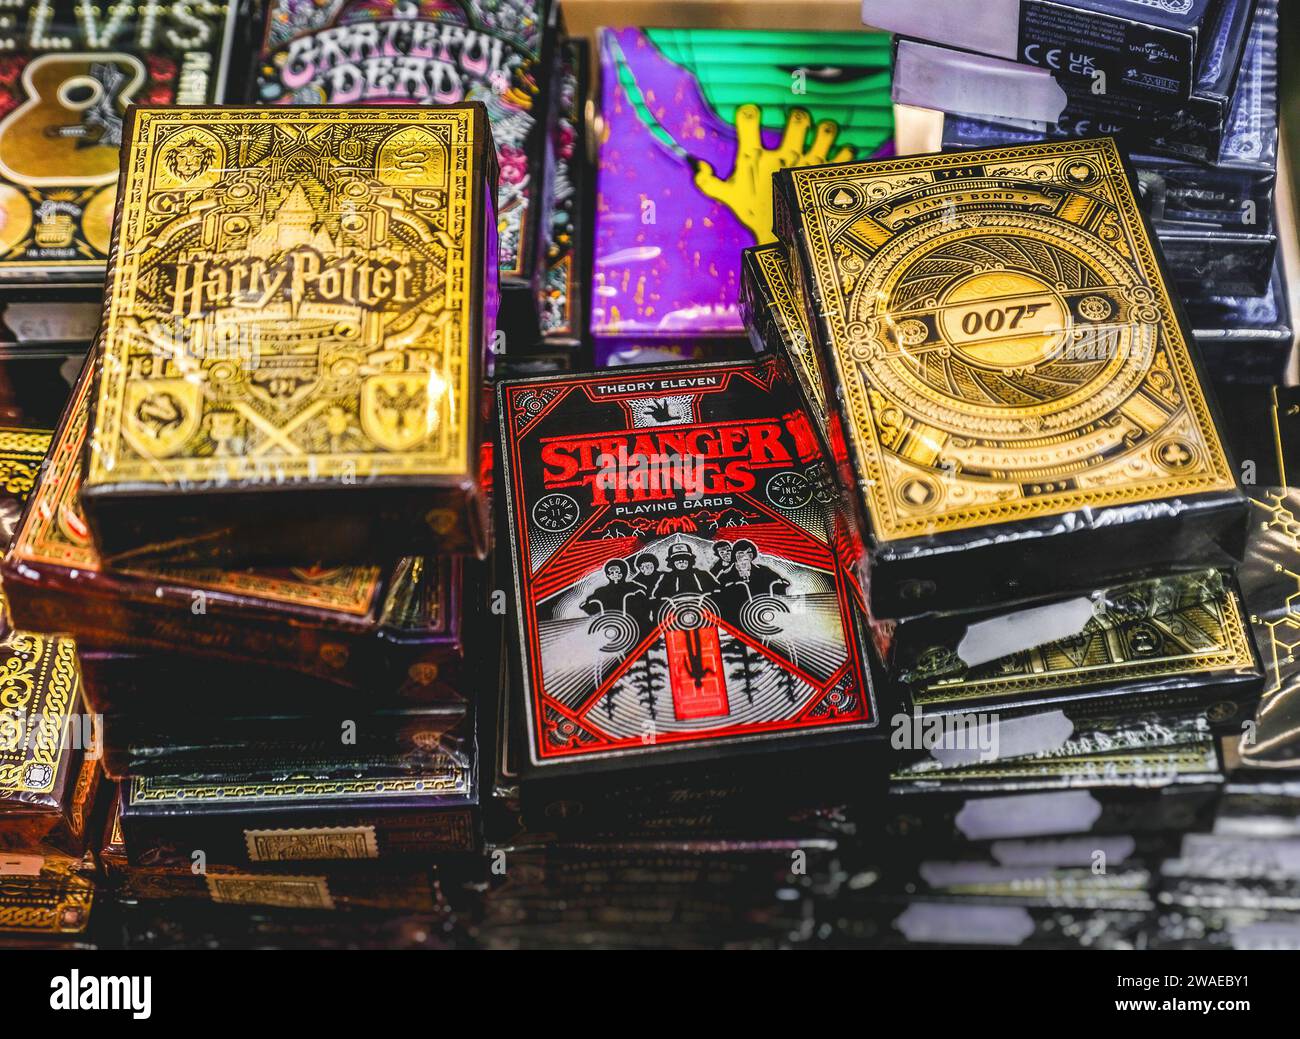 Mazzi di carte da gioco di marchi famosi come Harry Potter, Stranger Things e James Bond serie 007 per collezionisti. Foto Stock